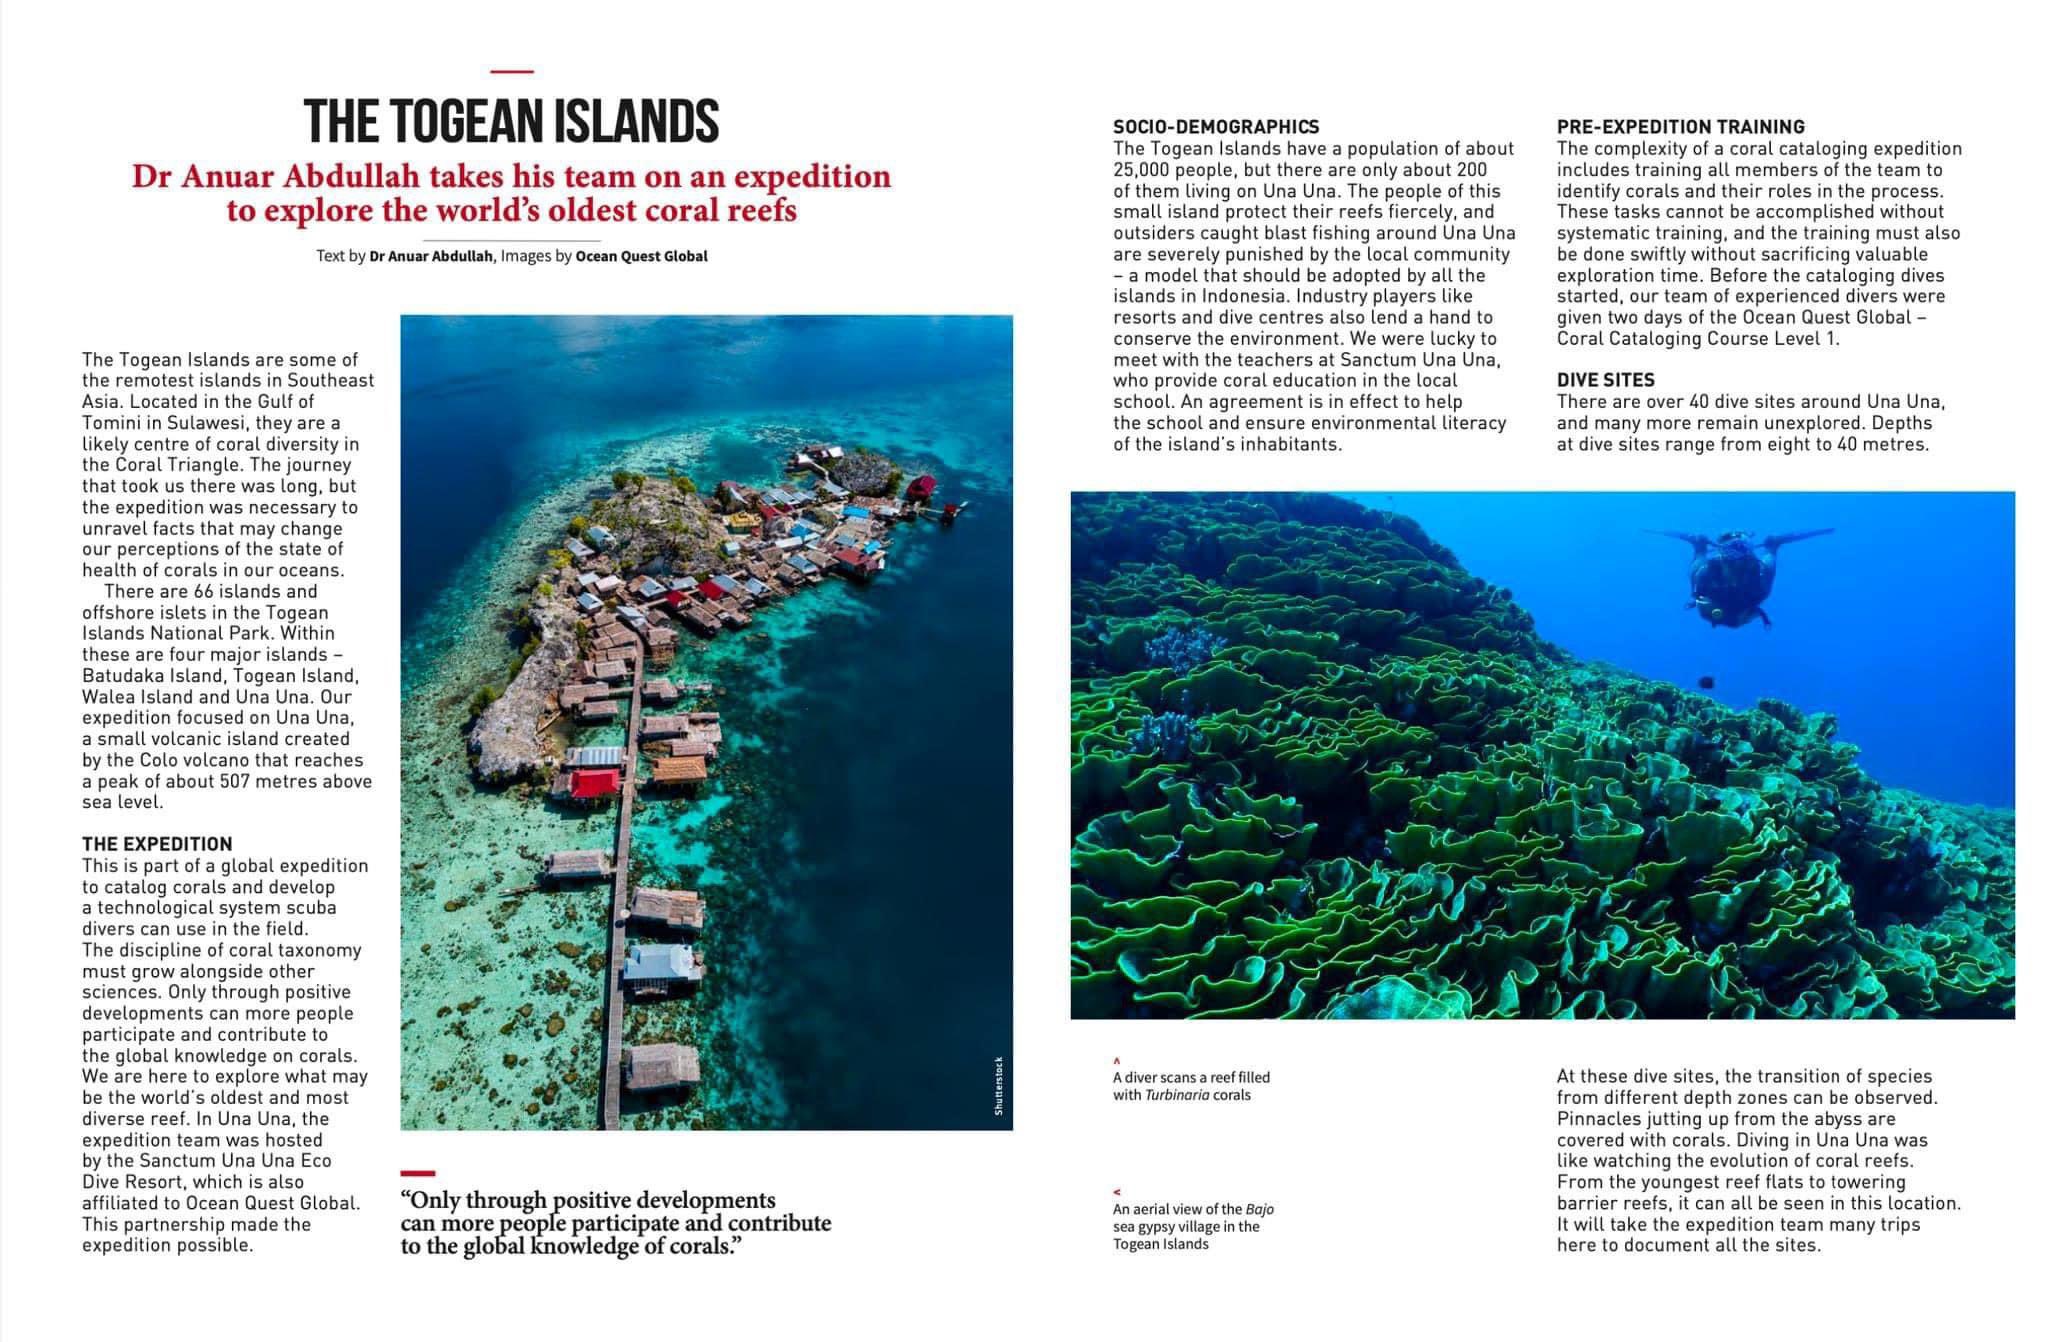 Kepulauan Togean - Tim Ekspedisi Dr Anuar Abdullah Menjelajahi Terumbu Karang Tertua di Dunia